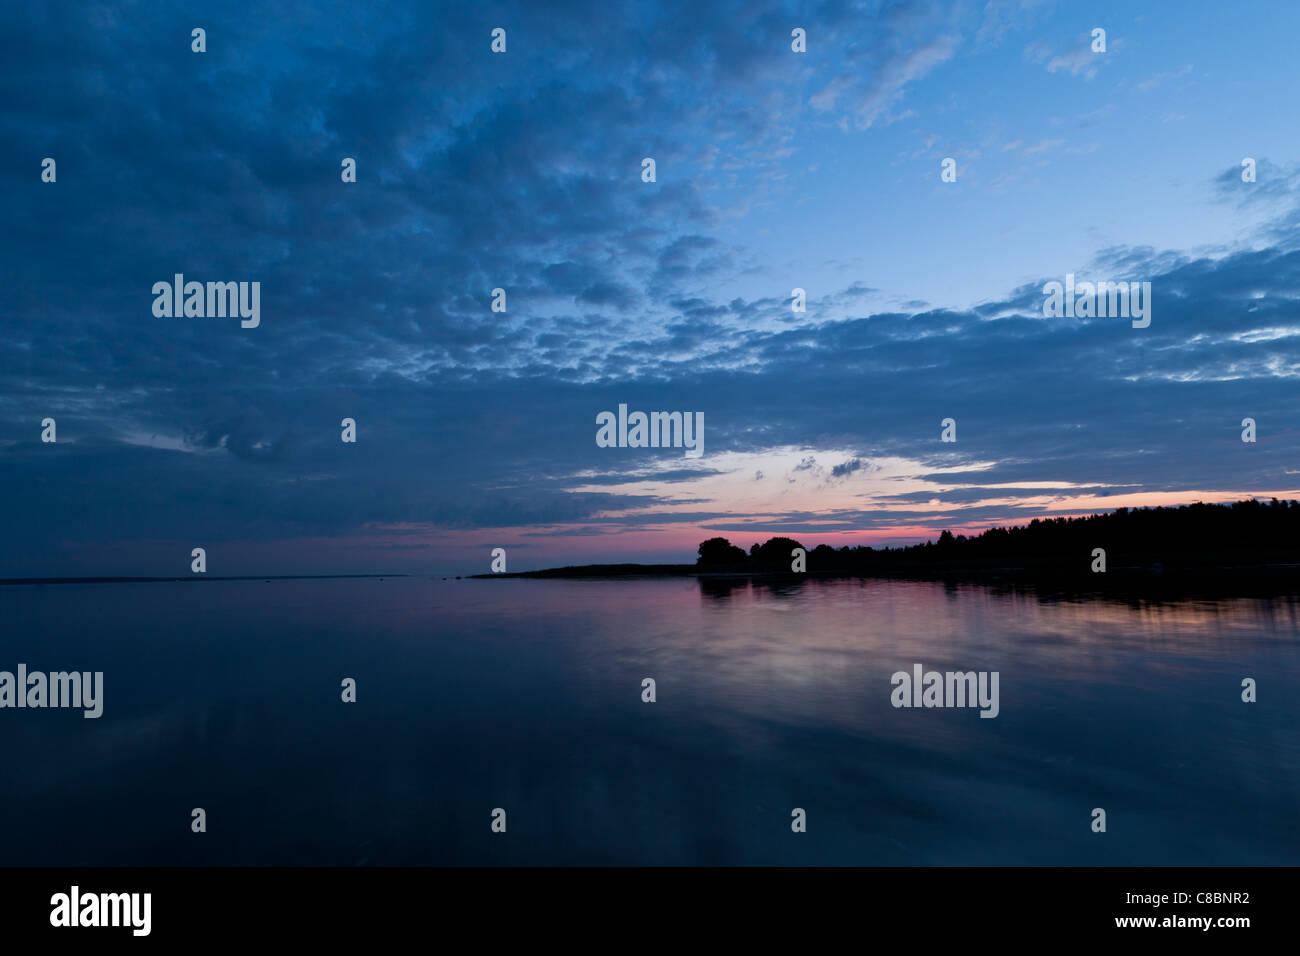 Summer night on Baltic Sea Stock Photo